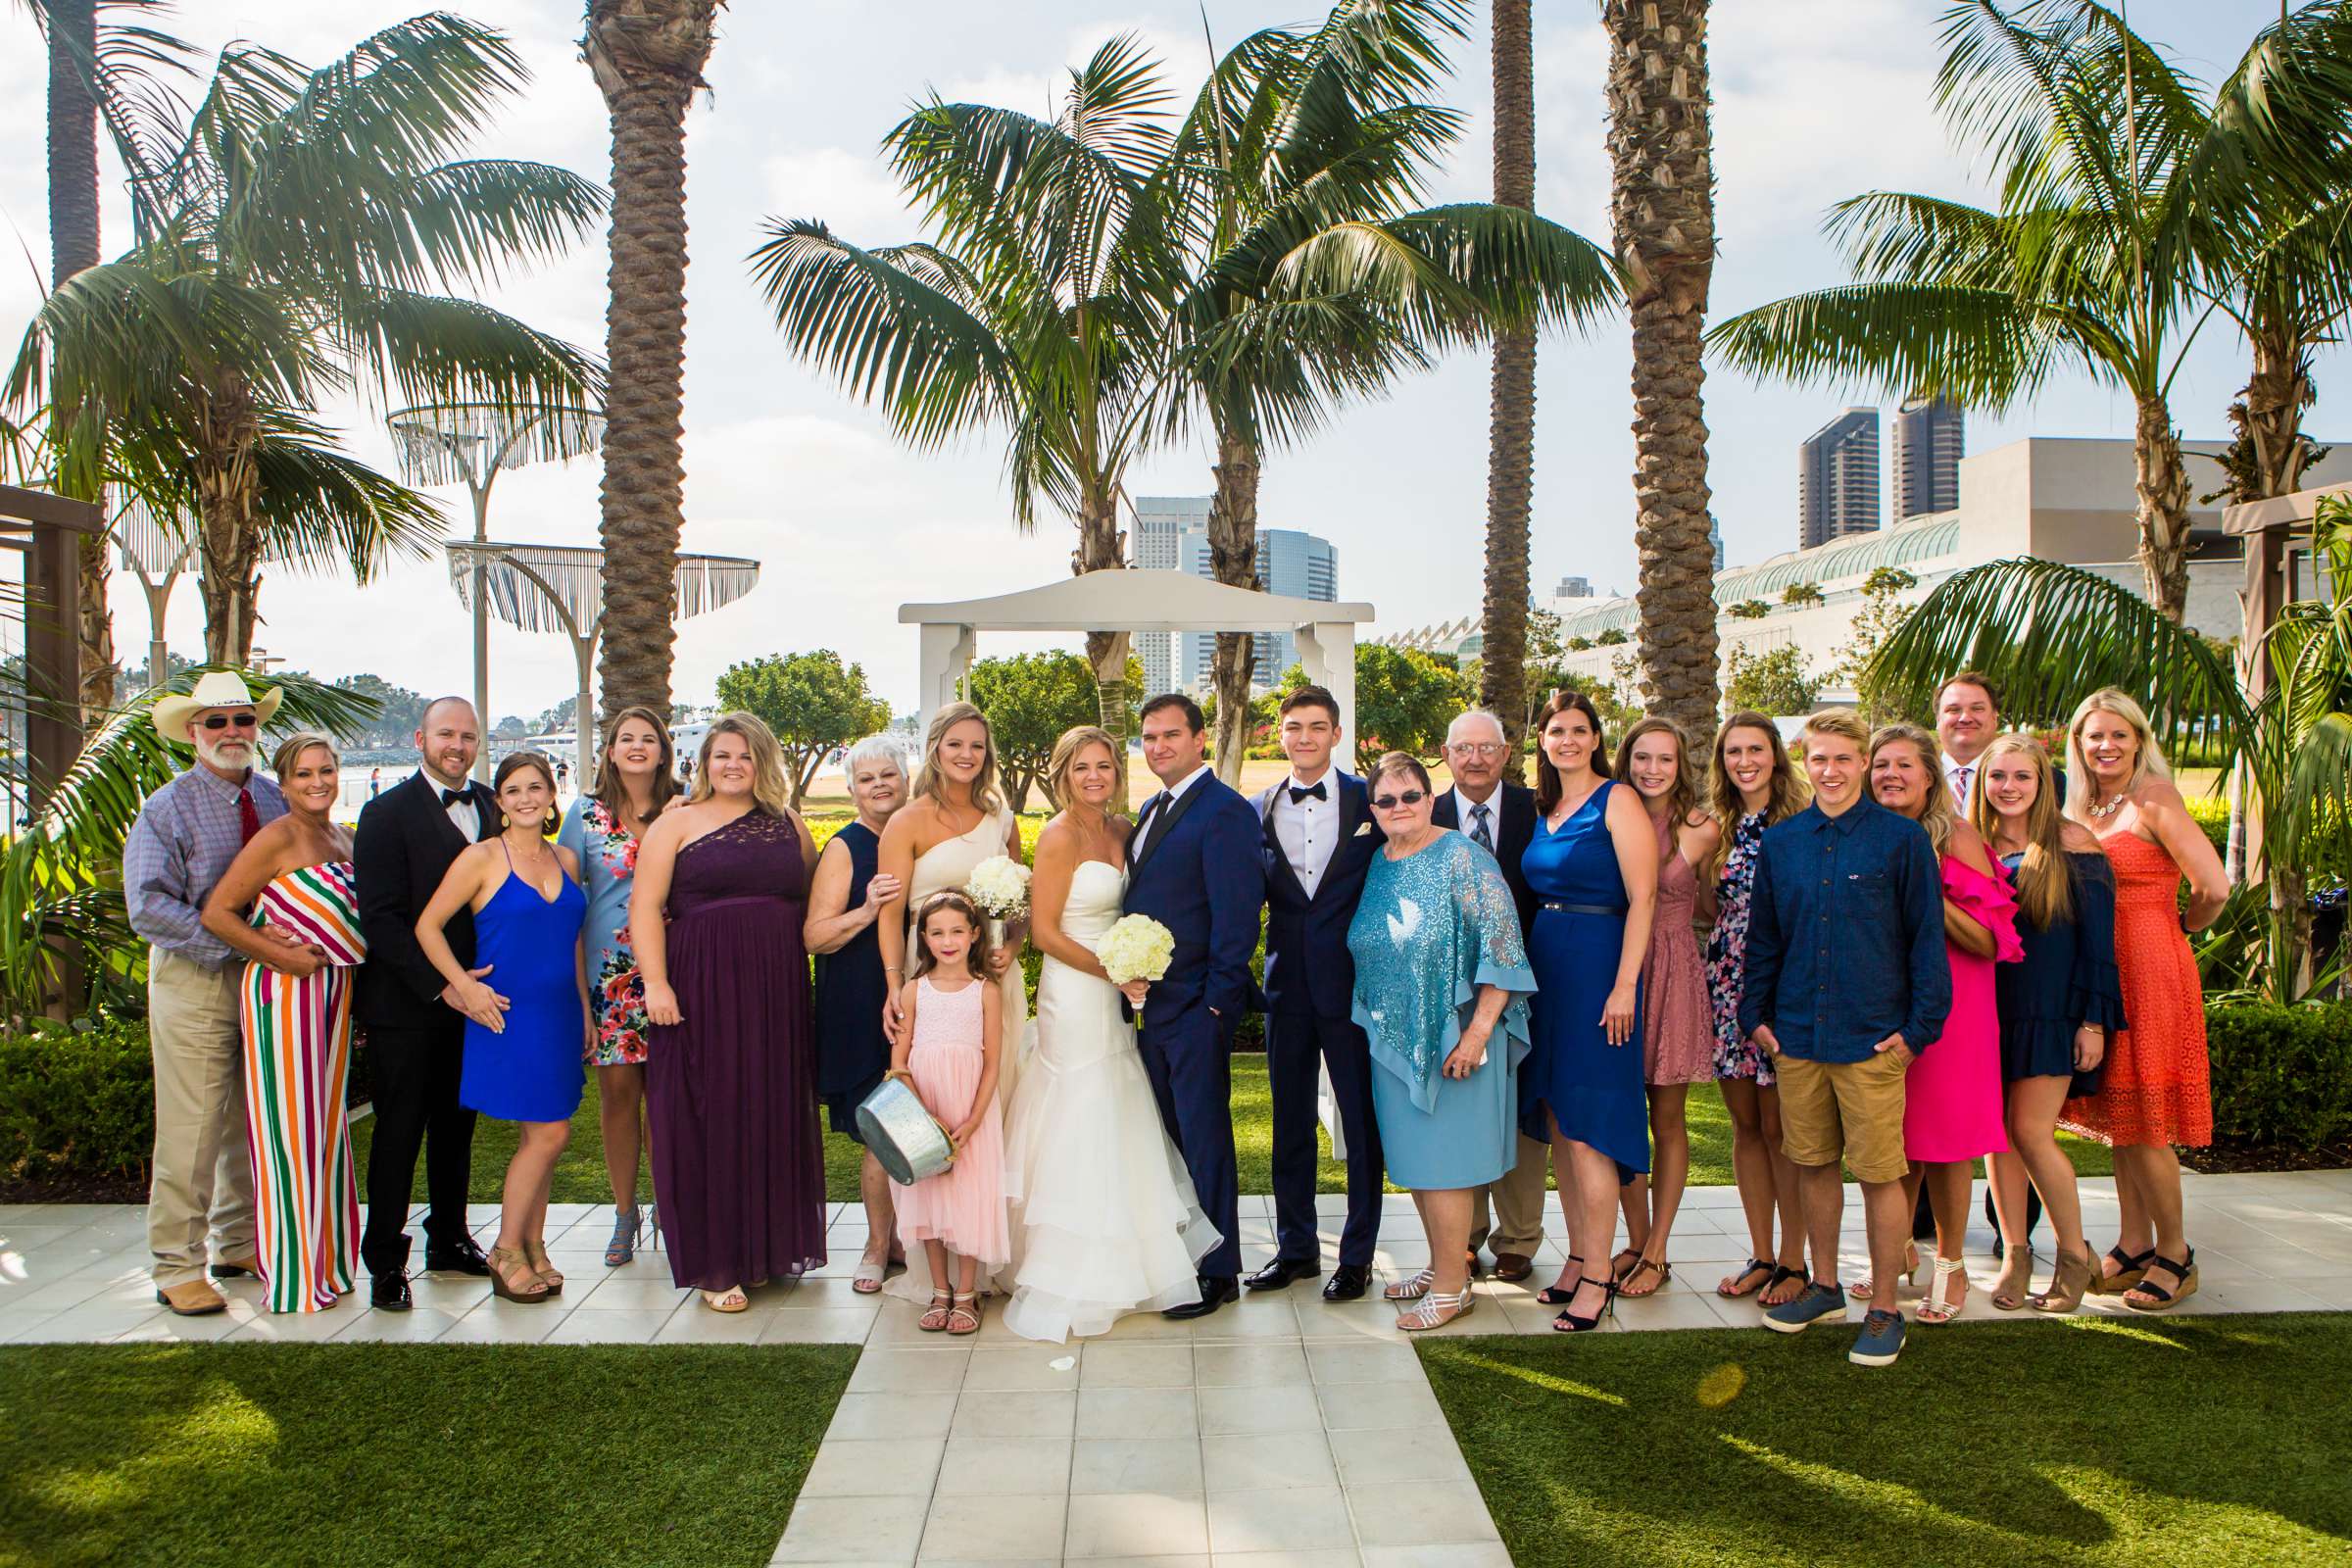 Hilton San Diego Bayfront Wedding, Debi and Dan Wedding Photo #484093 by True Photography